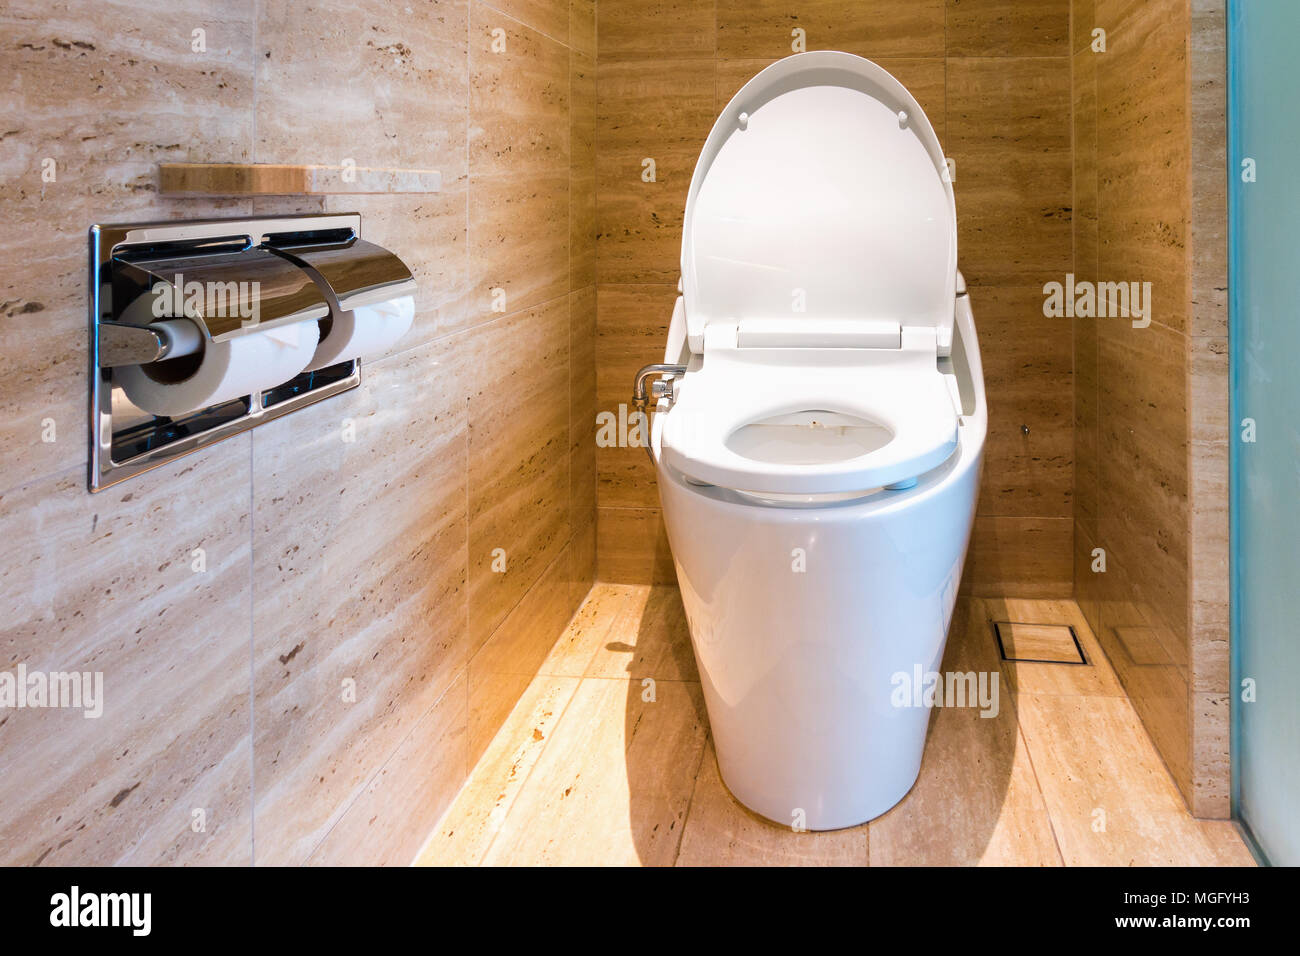 Moderne WC-Sitz und Inneneinrichtung., Architektur Innenraum  Stockfotografie - Alamy